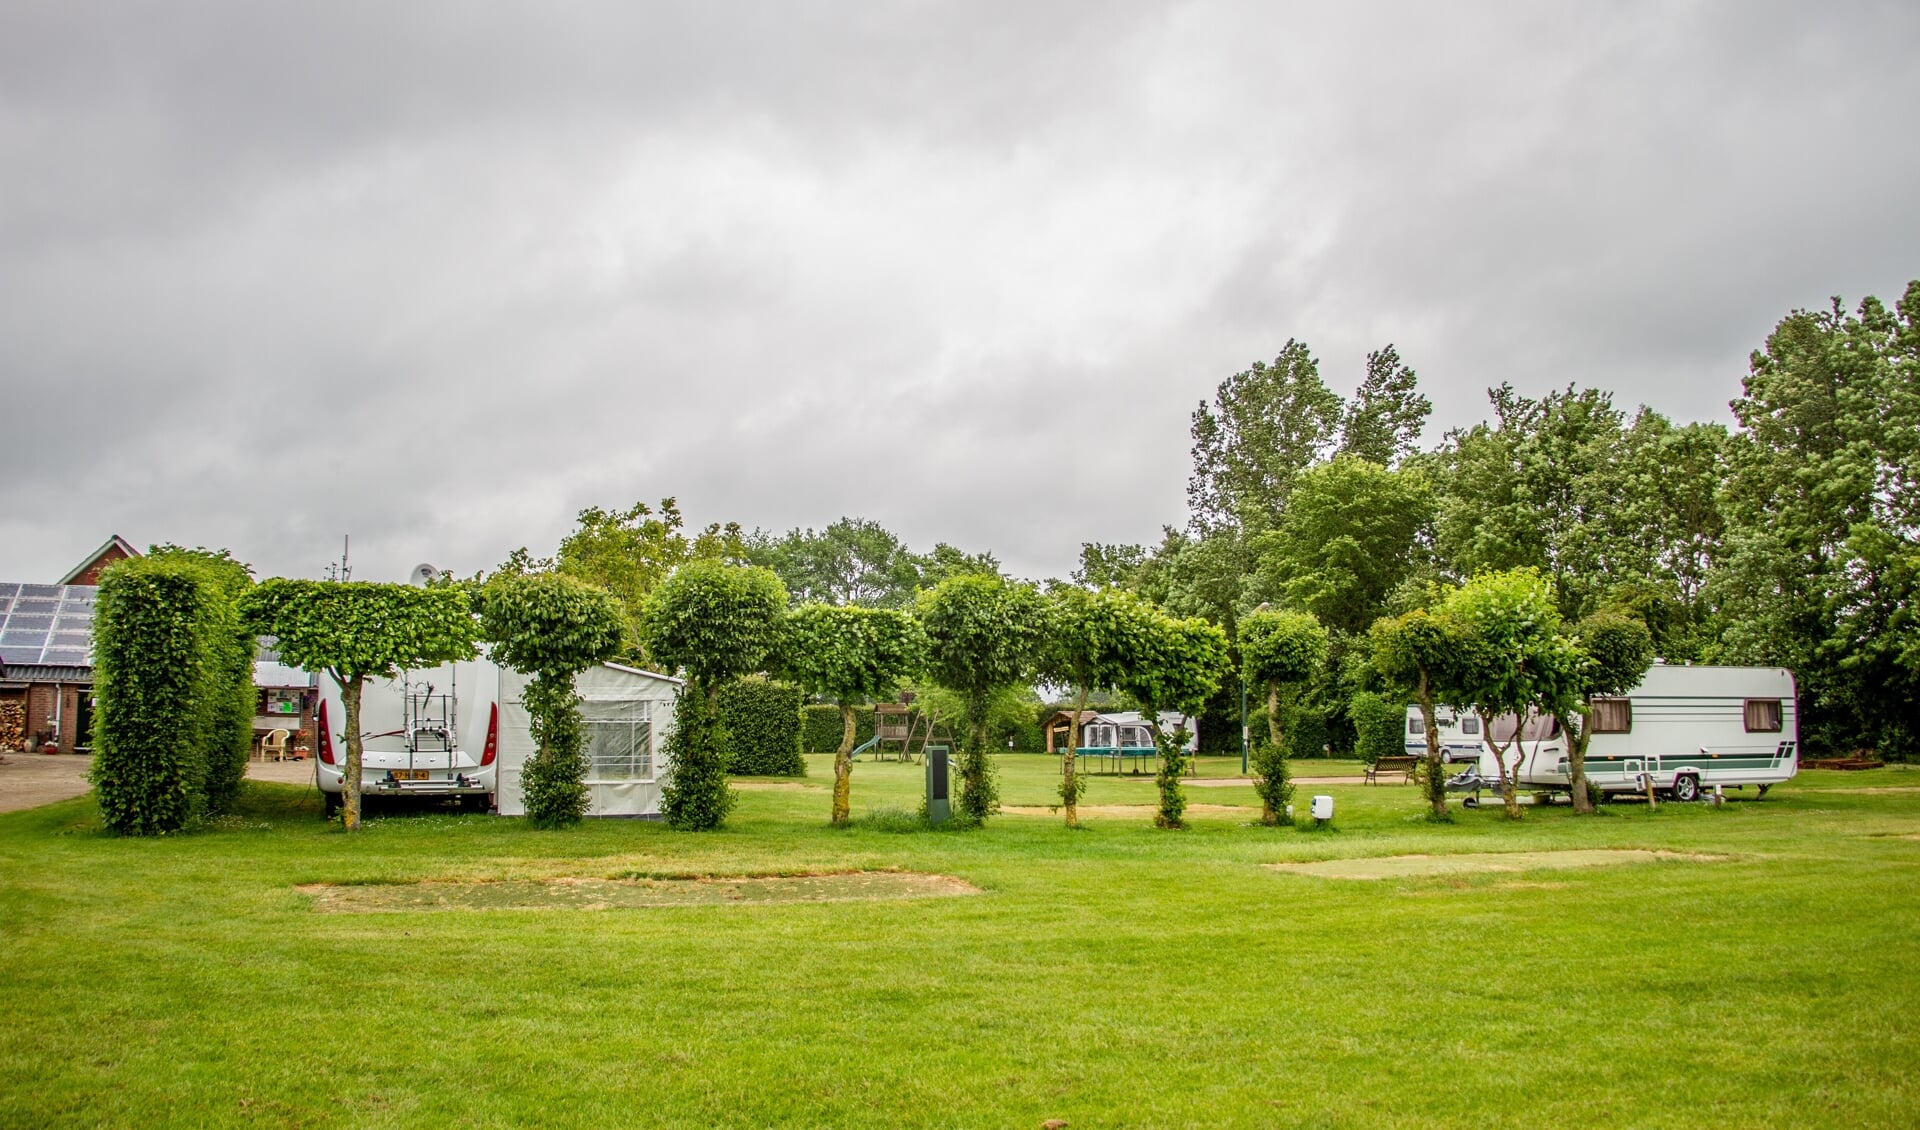 Het terrein van Camping Warnstee in Wichmond is ruim, met steeds één plek leeg tussen de caravans in. Foto: Liesbeth Spaansen